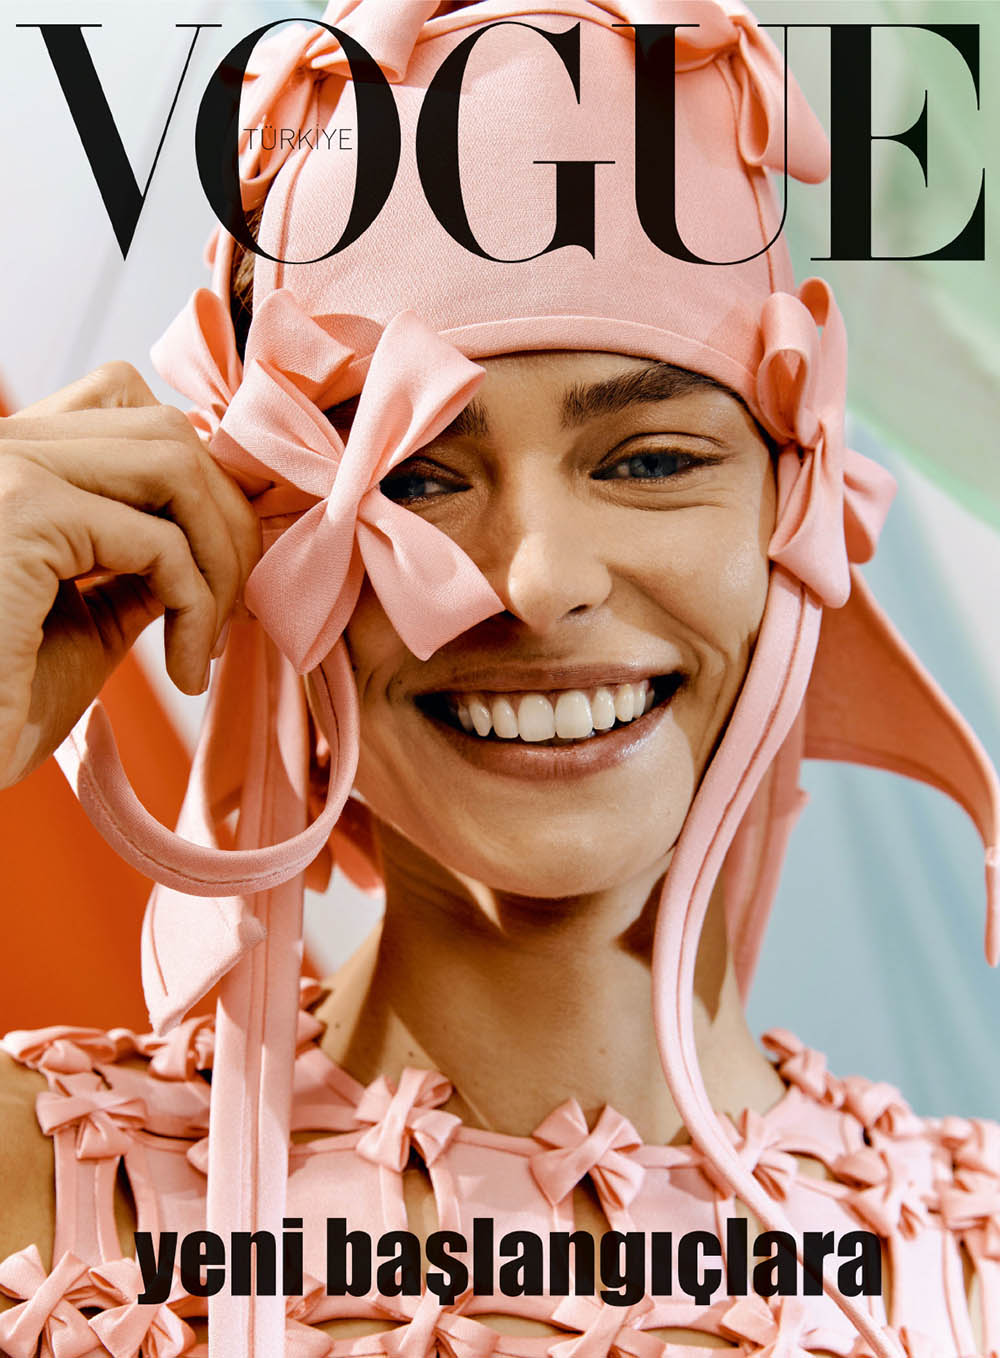 Vogue TÜRKİYE Magazine December 2019